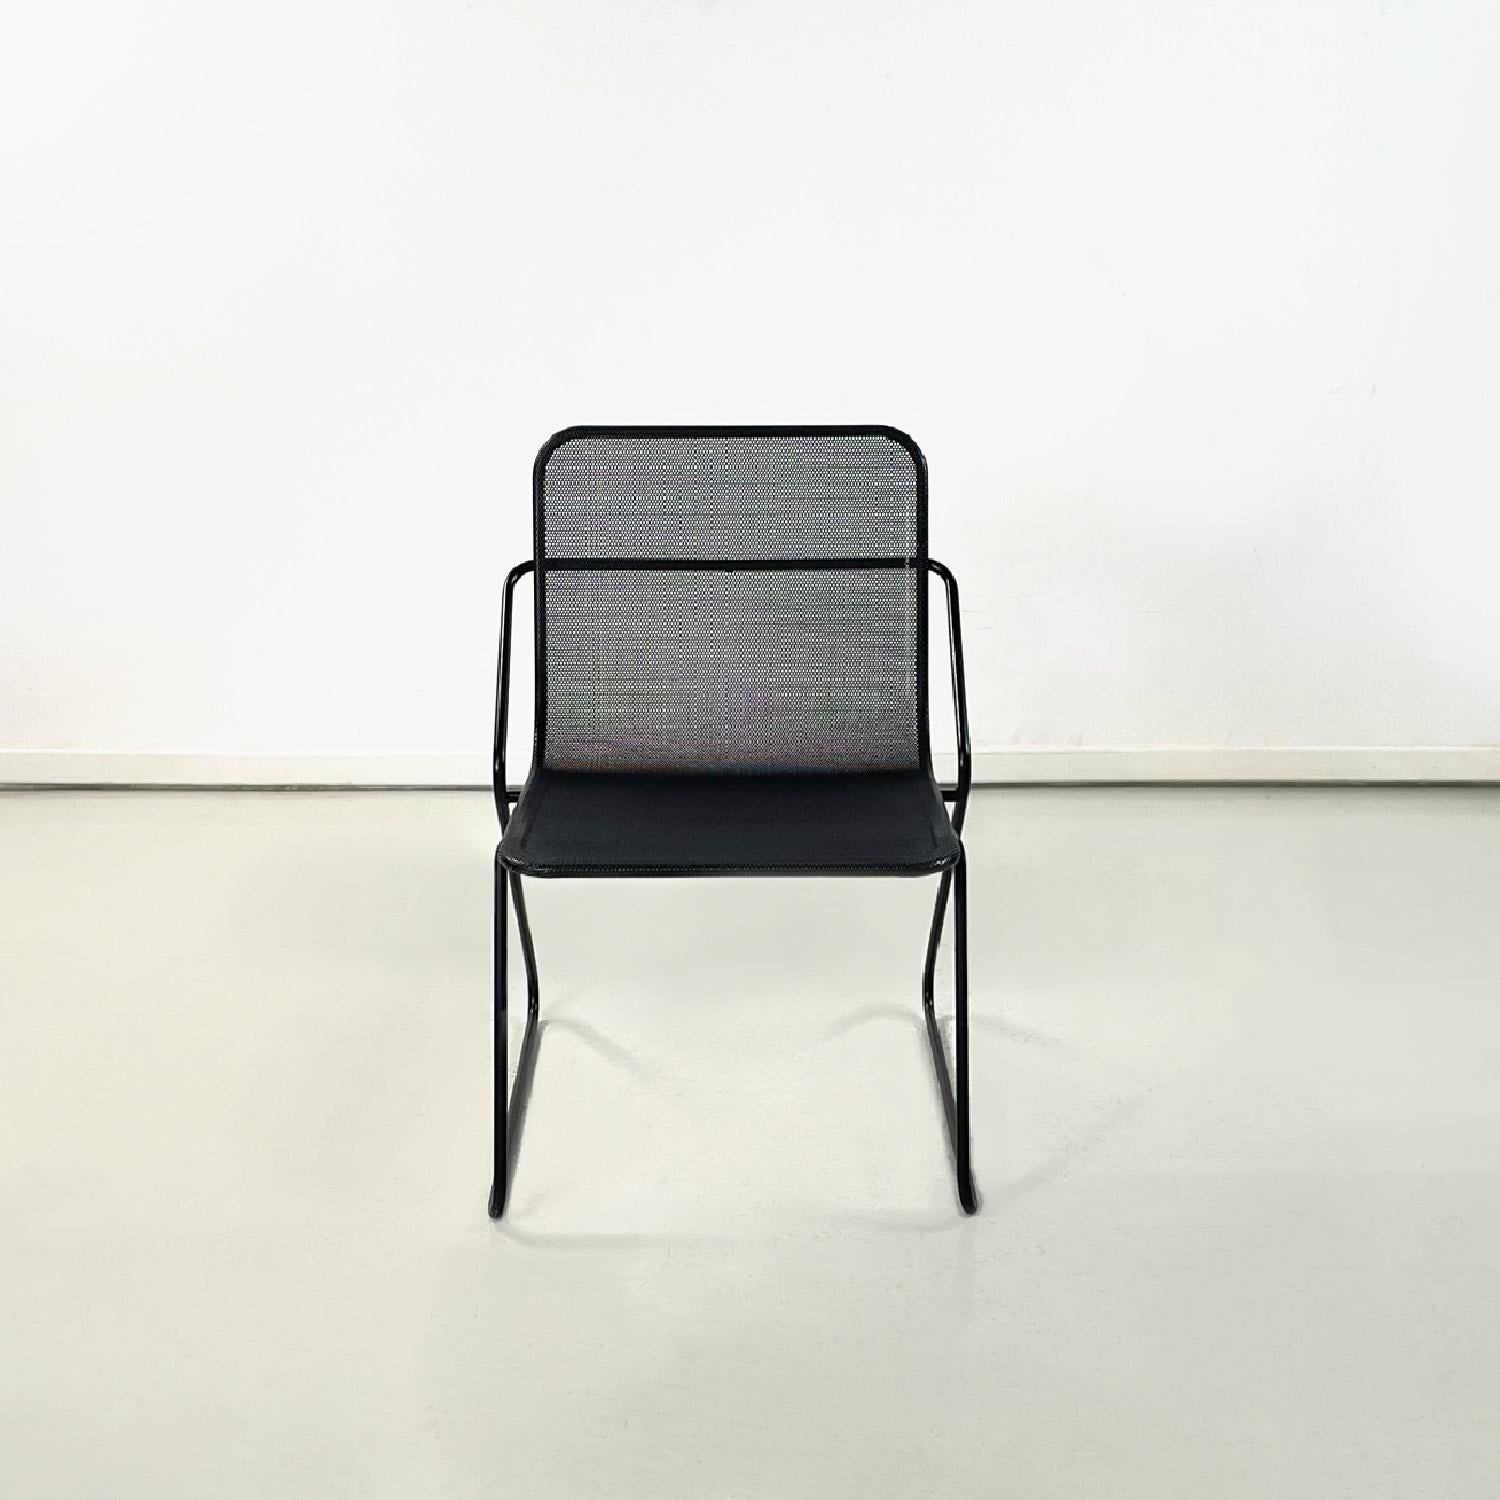 Chaise moderne italienne en métal et tôle perforée, 1980
Chaise avec une base rectangulaire en tige métallique peinte en noir. La structure est composée d'une seule tige métallique qui constitue les pieds de forme triangulaire et la structure du